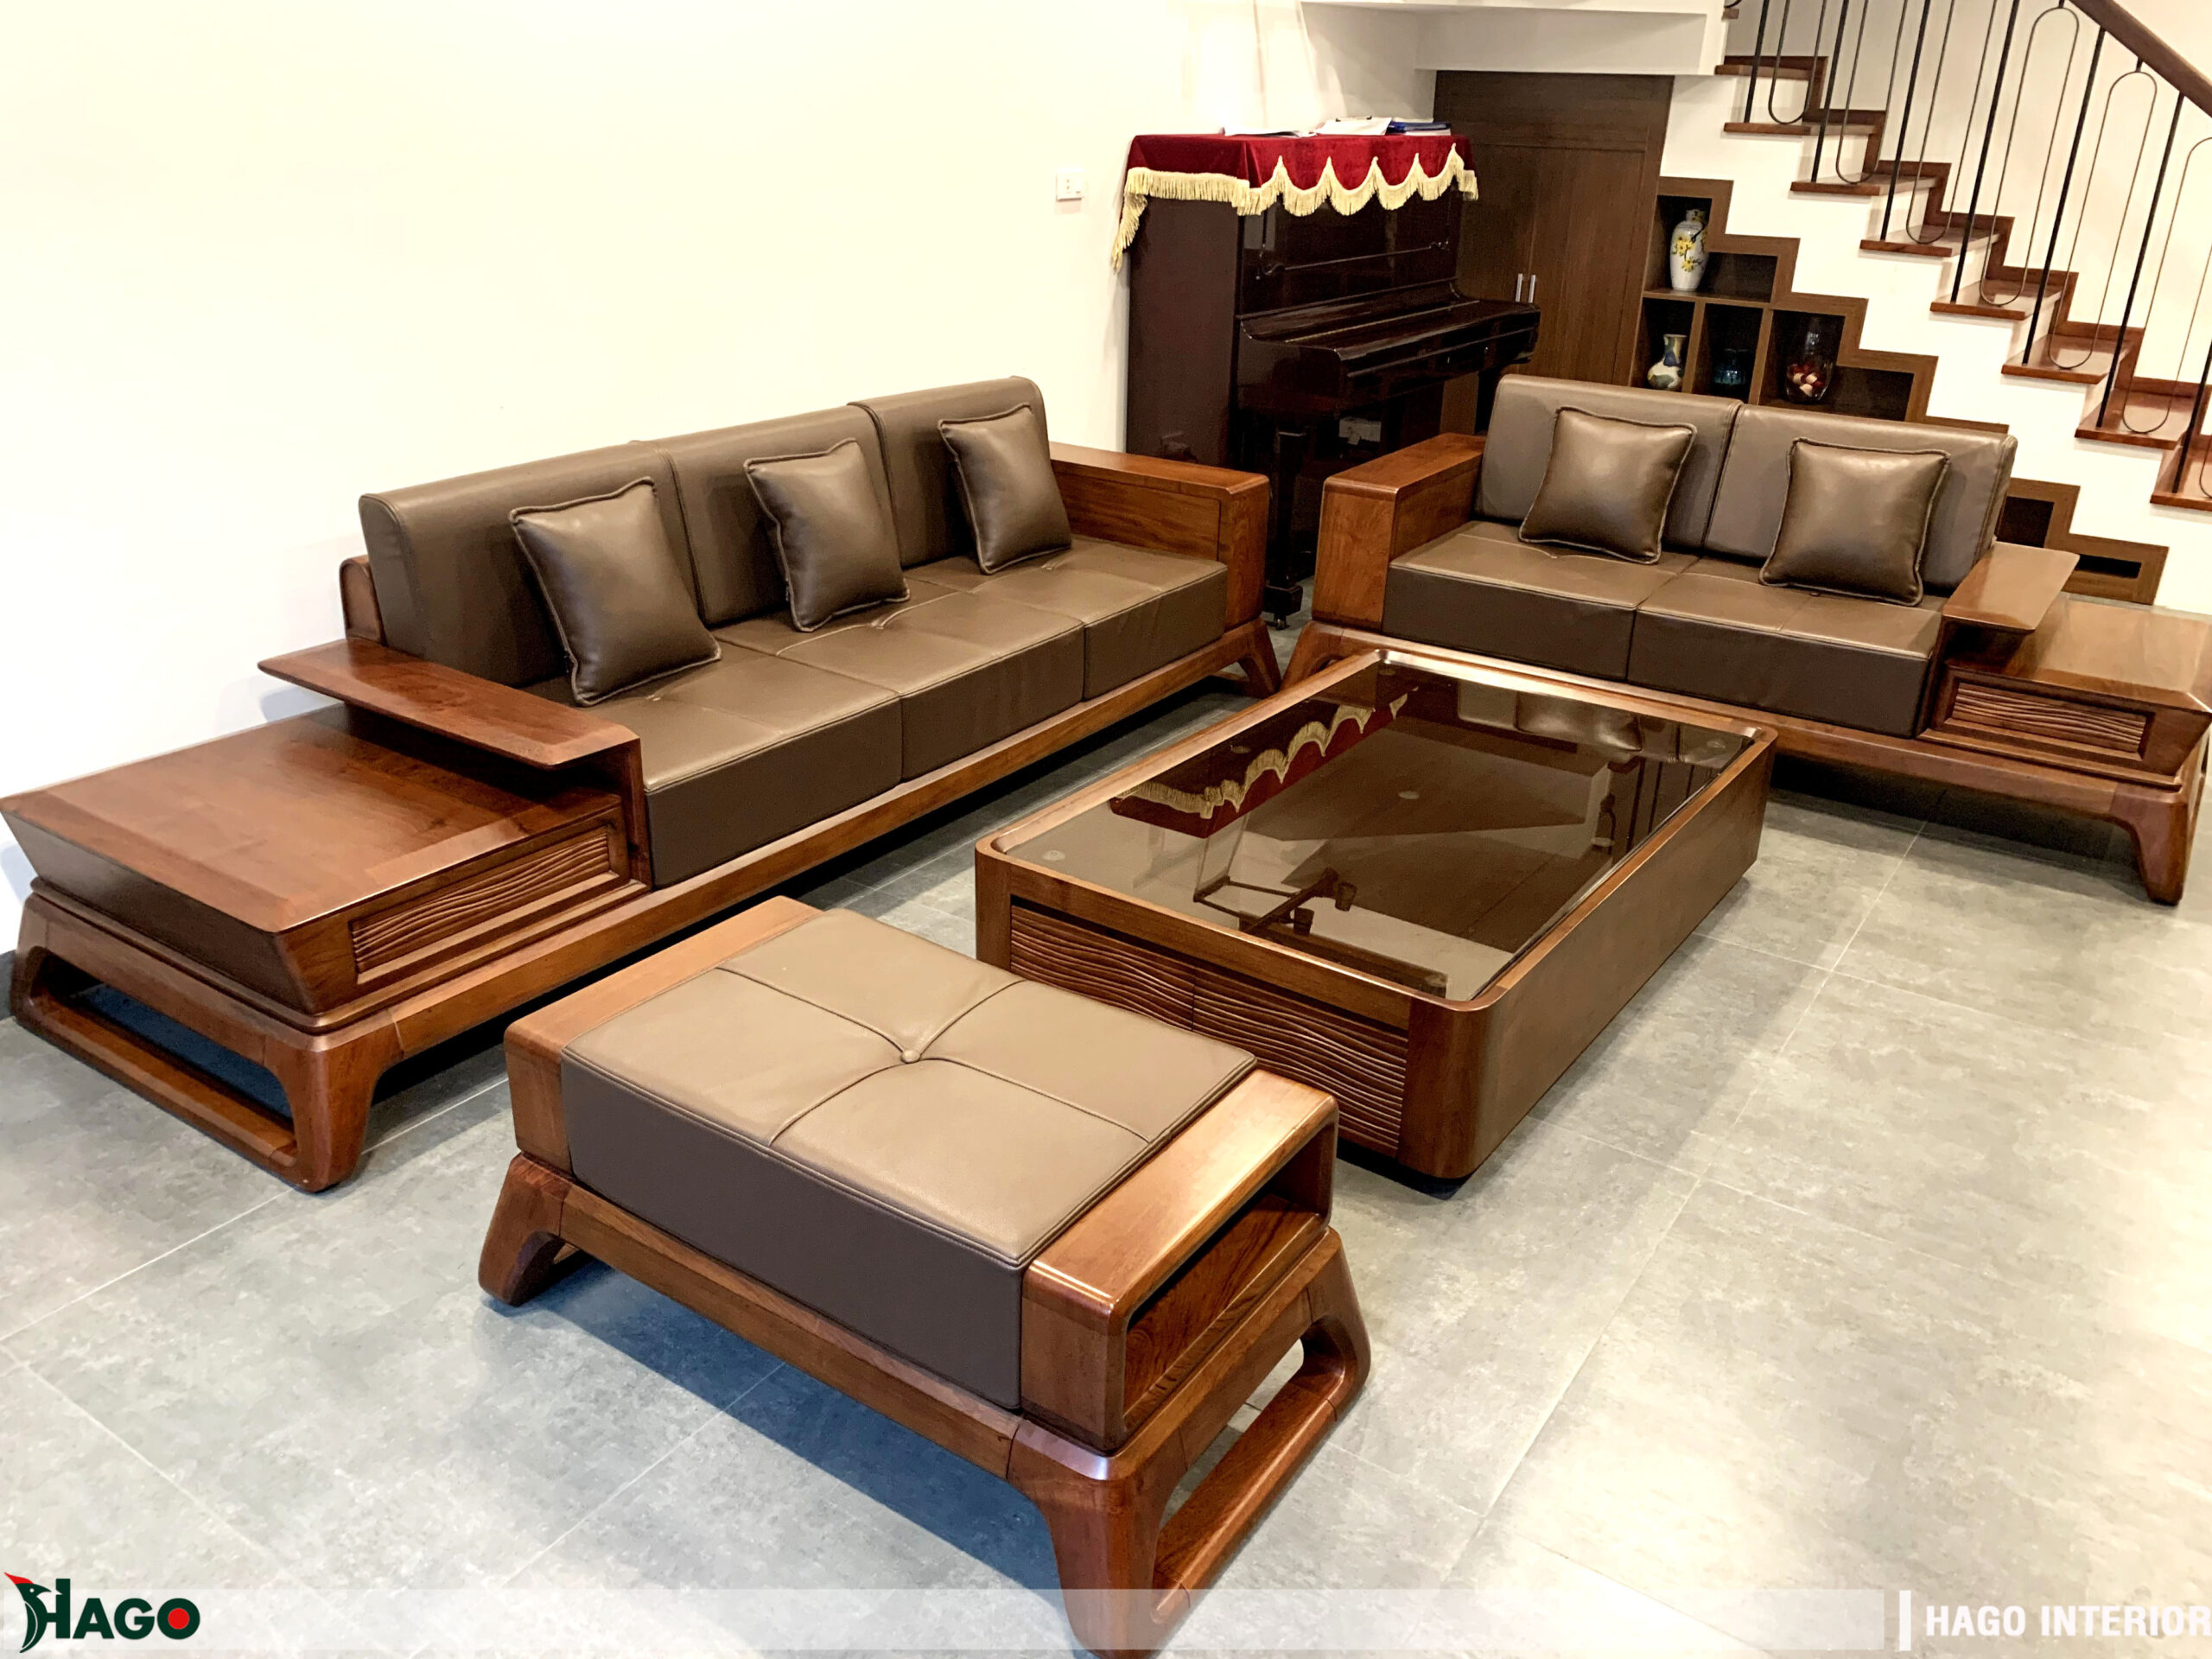 Thiết kế sofa gỗ Đẹp, sang trọng hiện đại